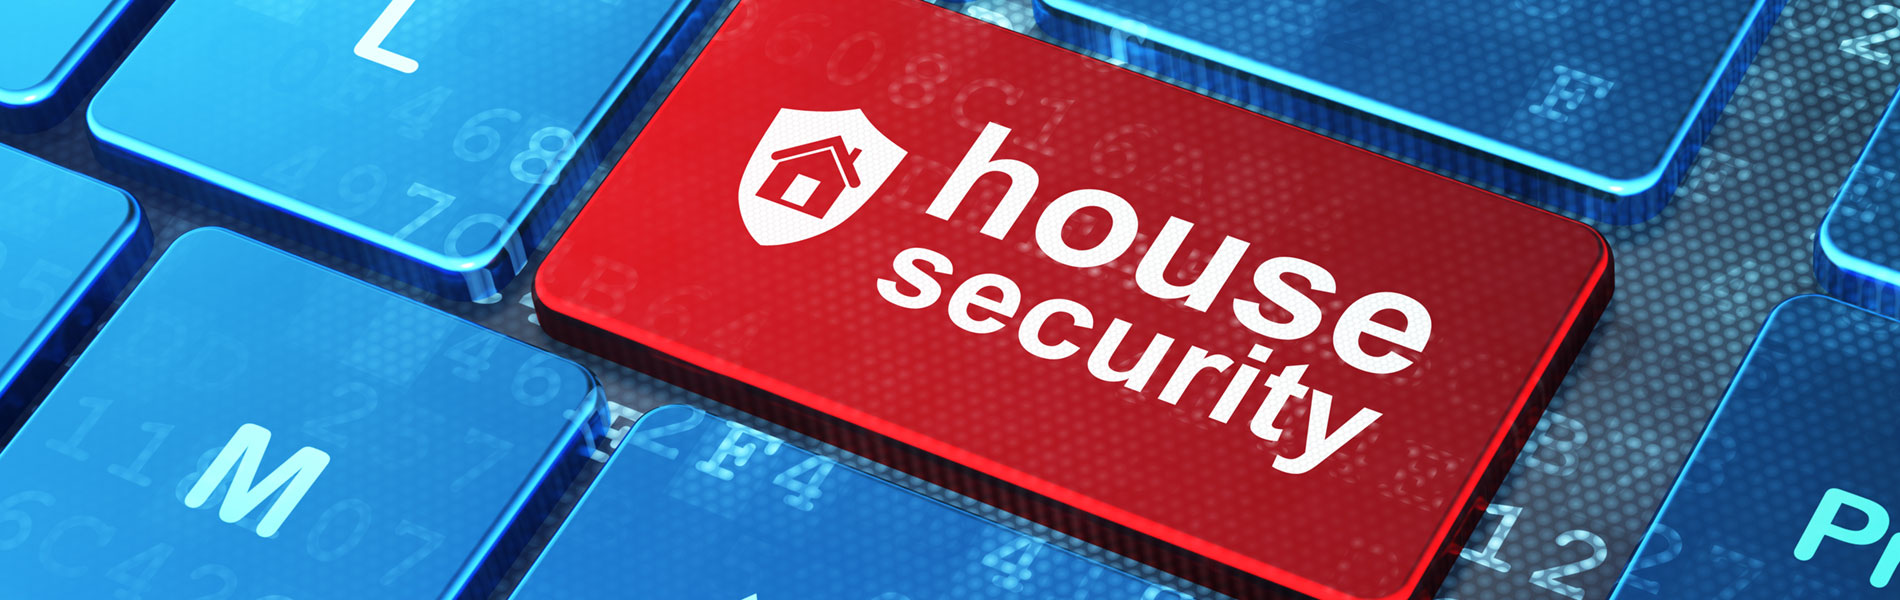 Hırsız alarm sistemleri ev güvenliğiniz için ideal